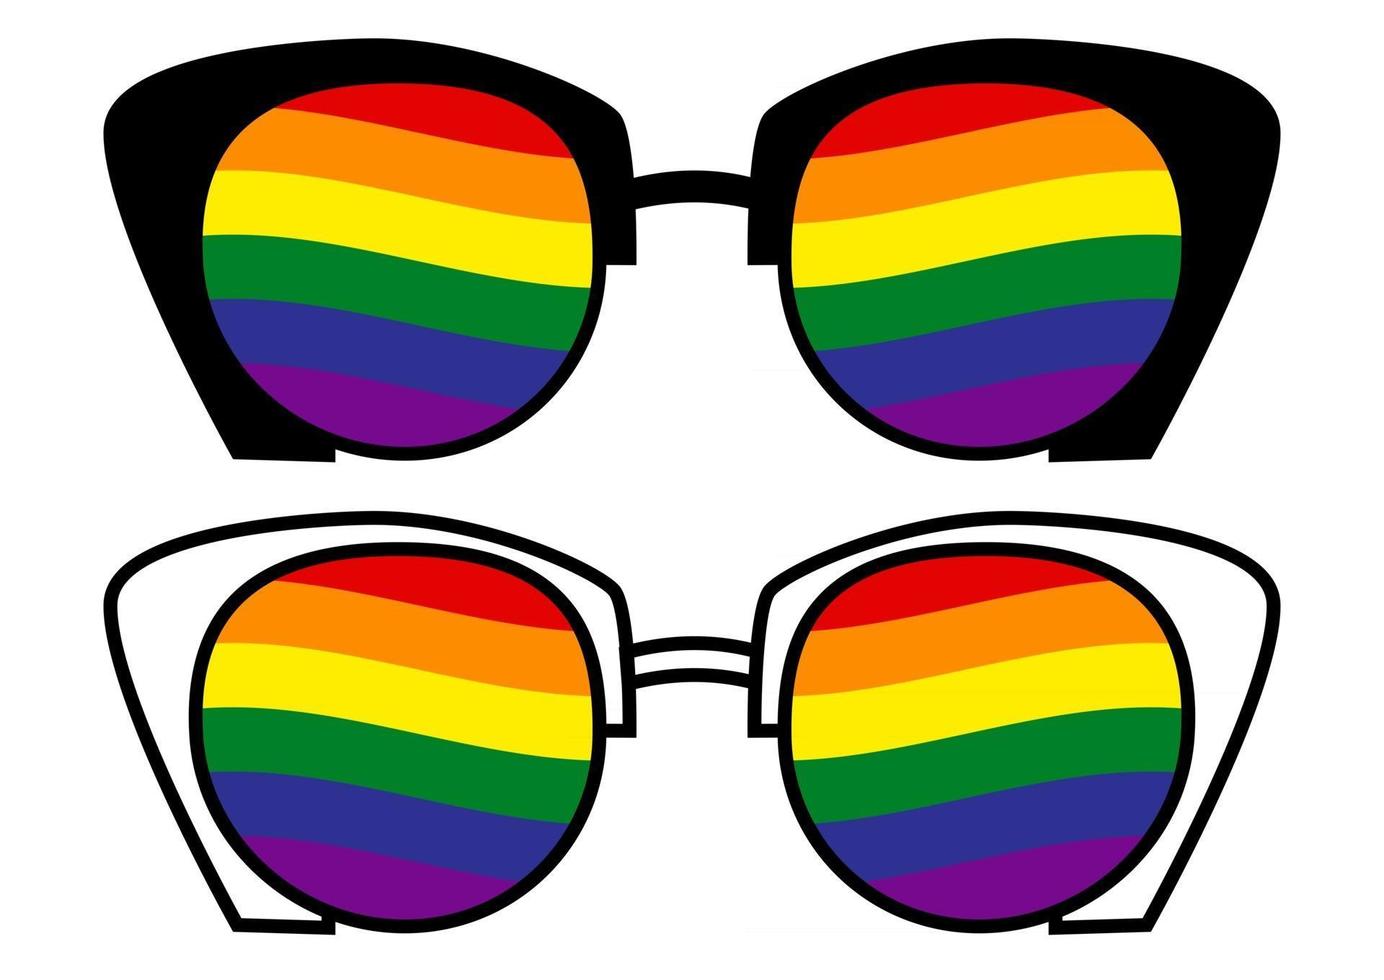 lunettes de soleil avec drapeau transgenre lgbt. fierté gai. communauté LGBT. l'égalité et l'affirmation de soi. autocollant, patch, impression de t-shirt, création de logo. vecteur